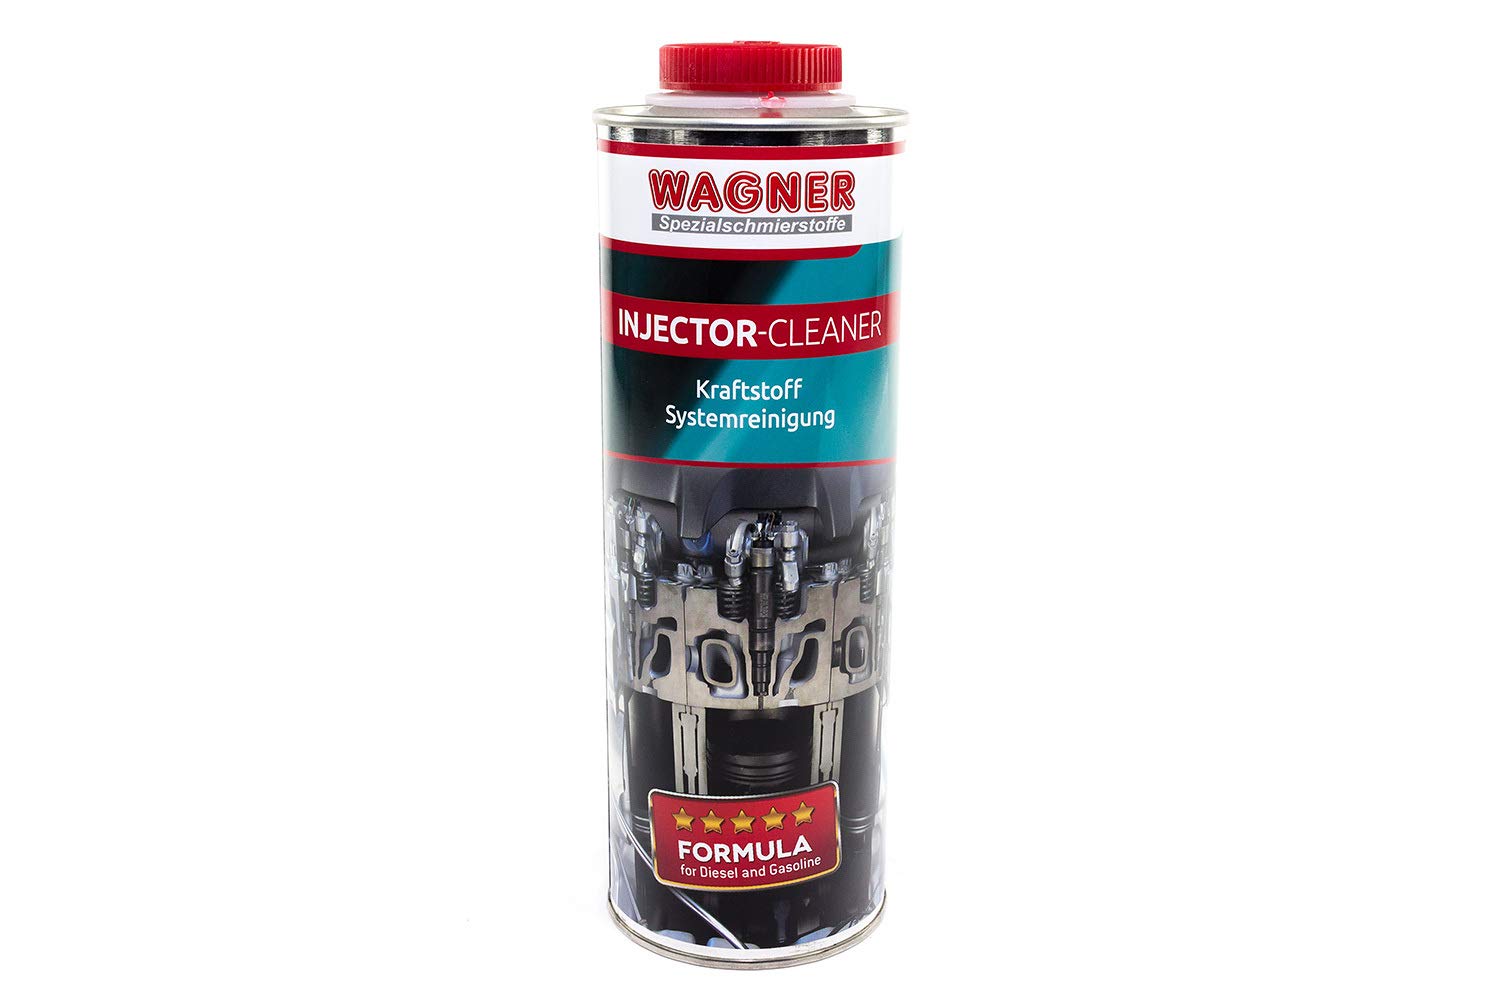 WAGNER Injector Cleaner Kraftstoffsystem-Reinigung für Diesel-Motoren - 047001 - 1 Liter von WAGNER Spezialschmierstoffe GmbH & Co. KG